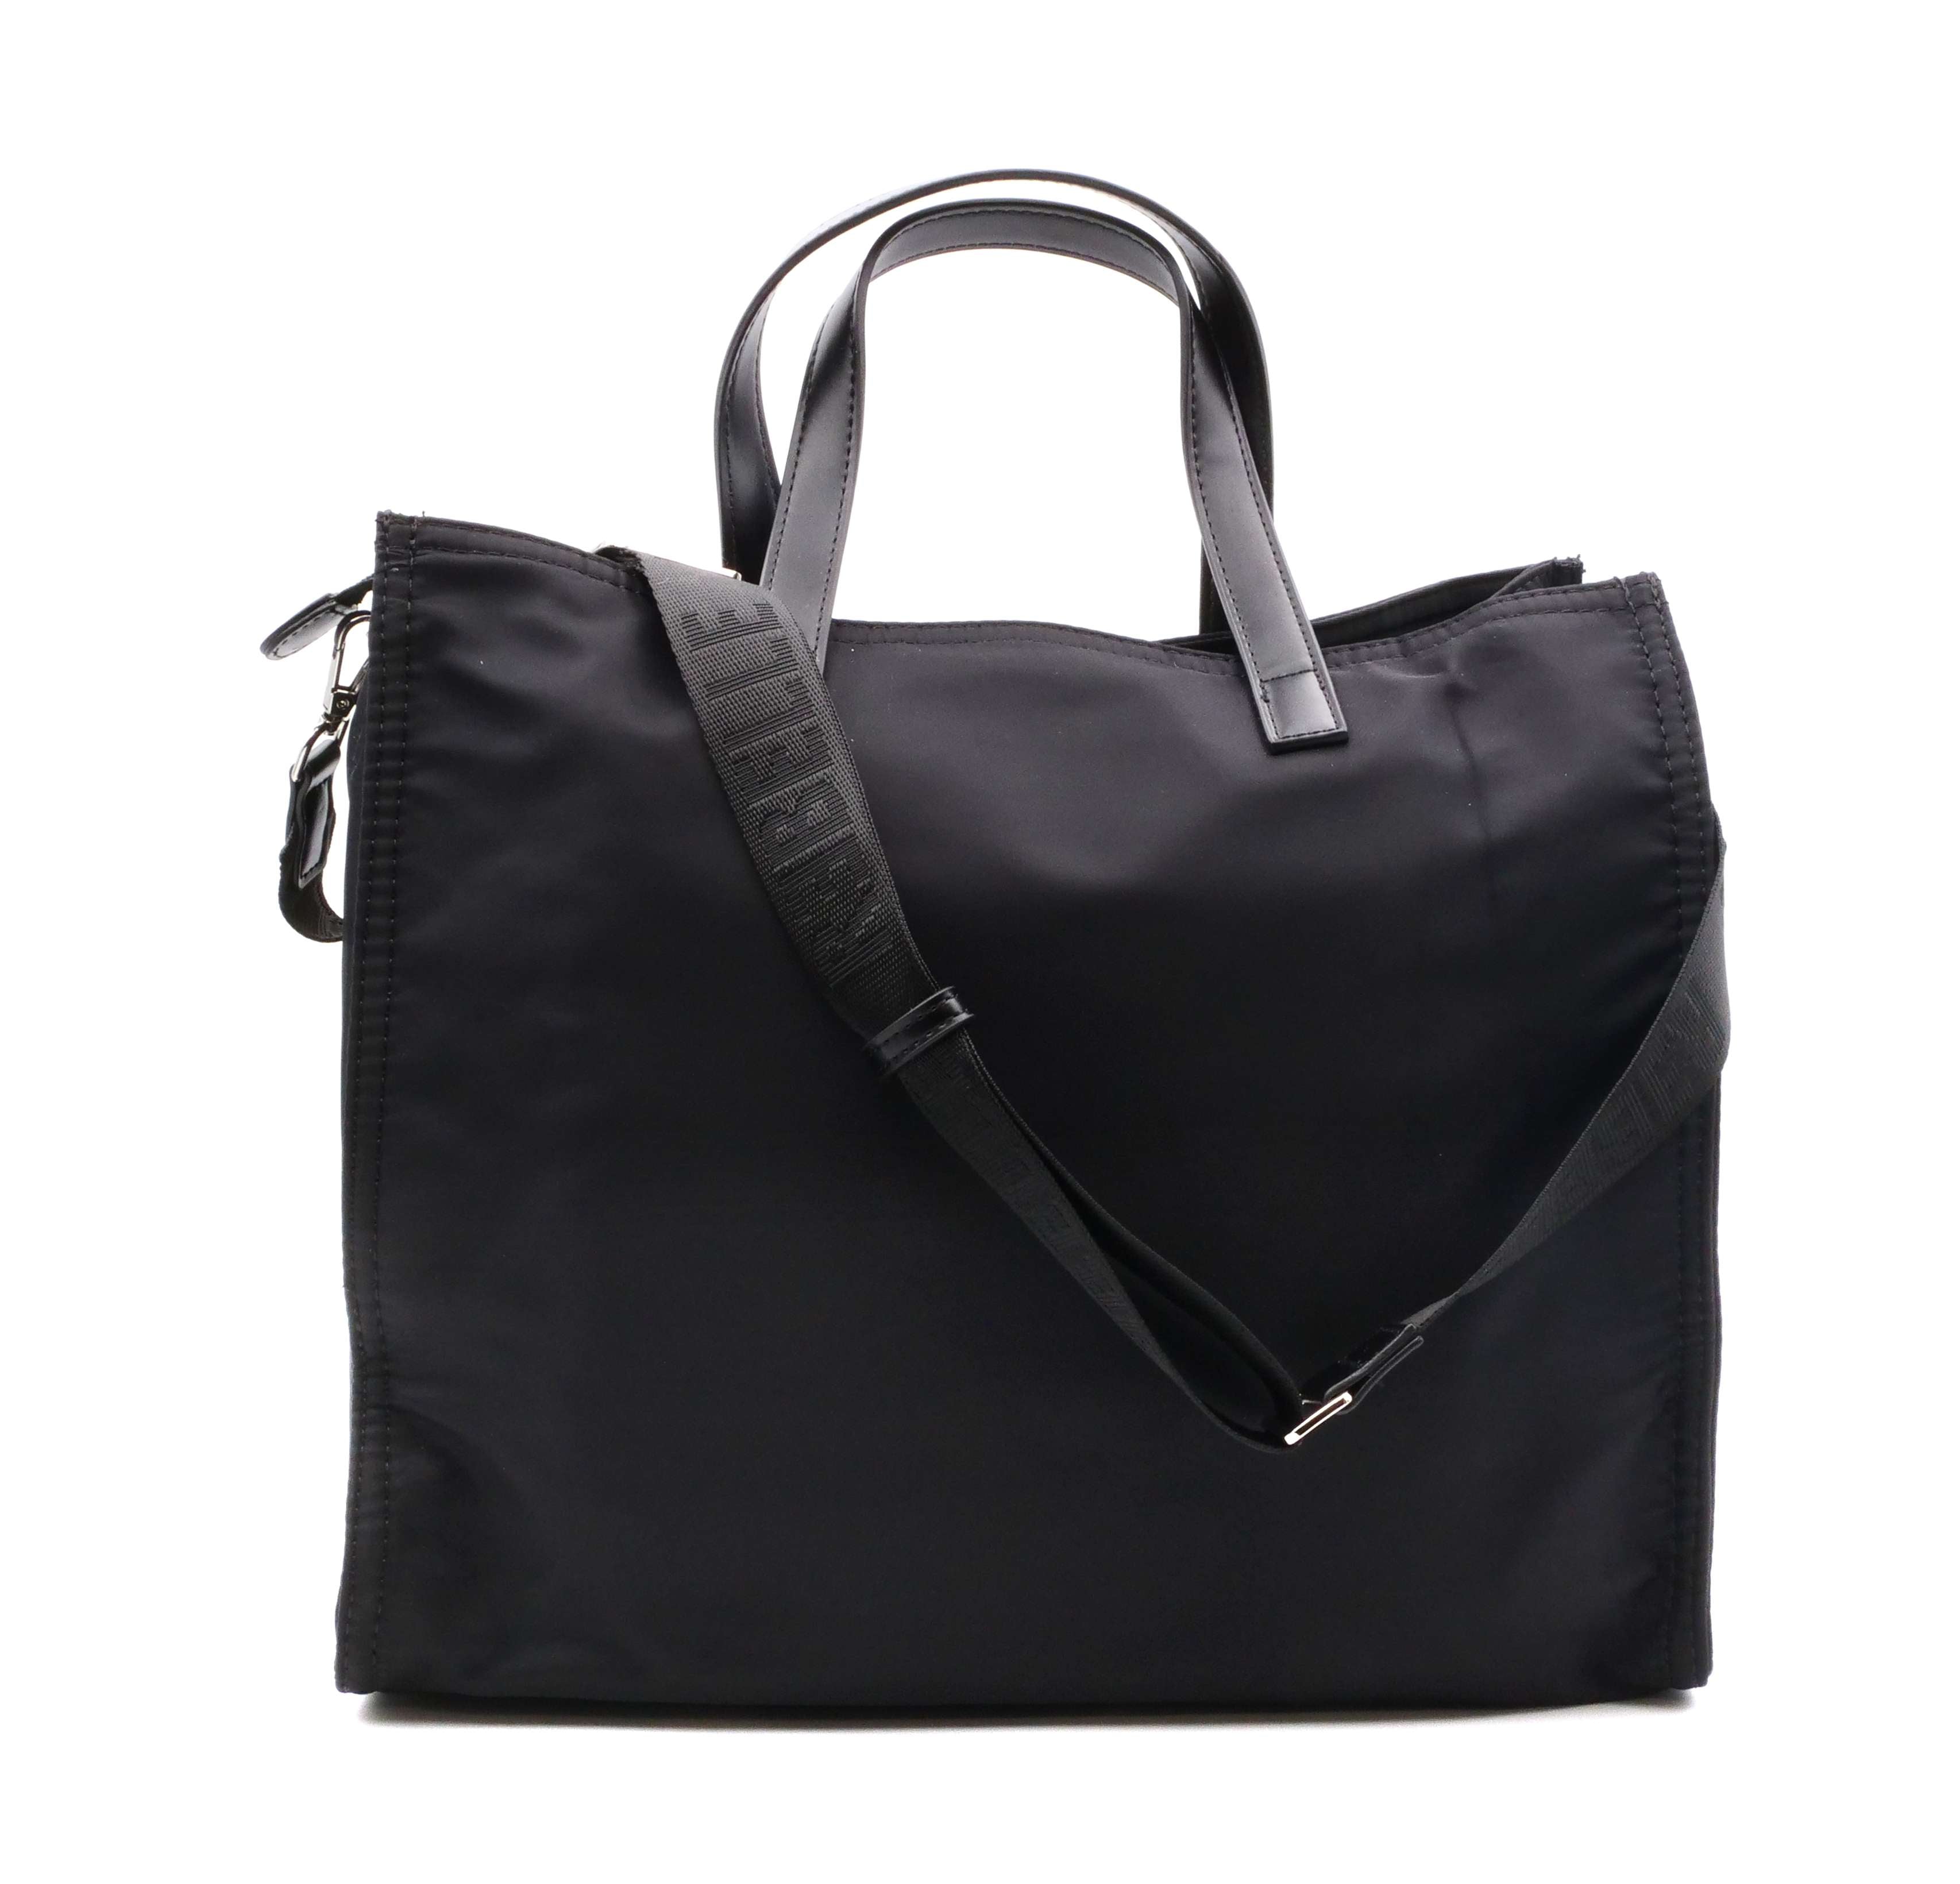 Shopping Bag ELECTRA REBELLE - BLACK - Sergio Fabbri